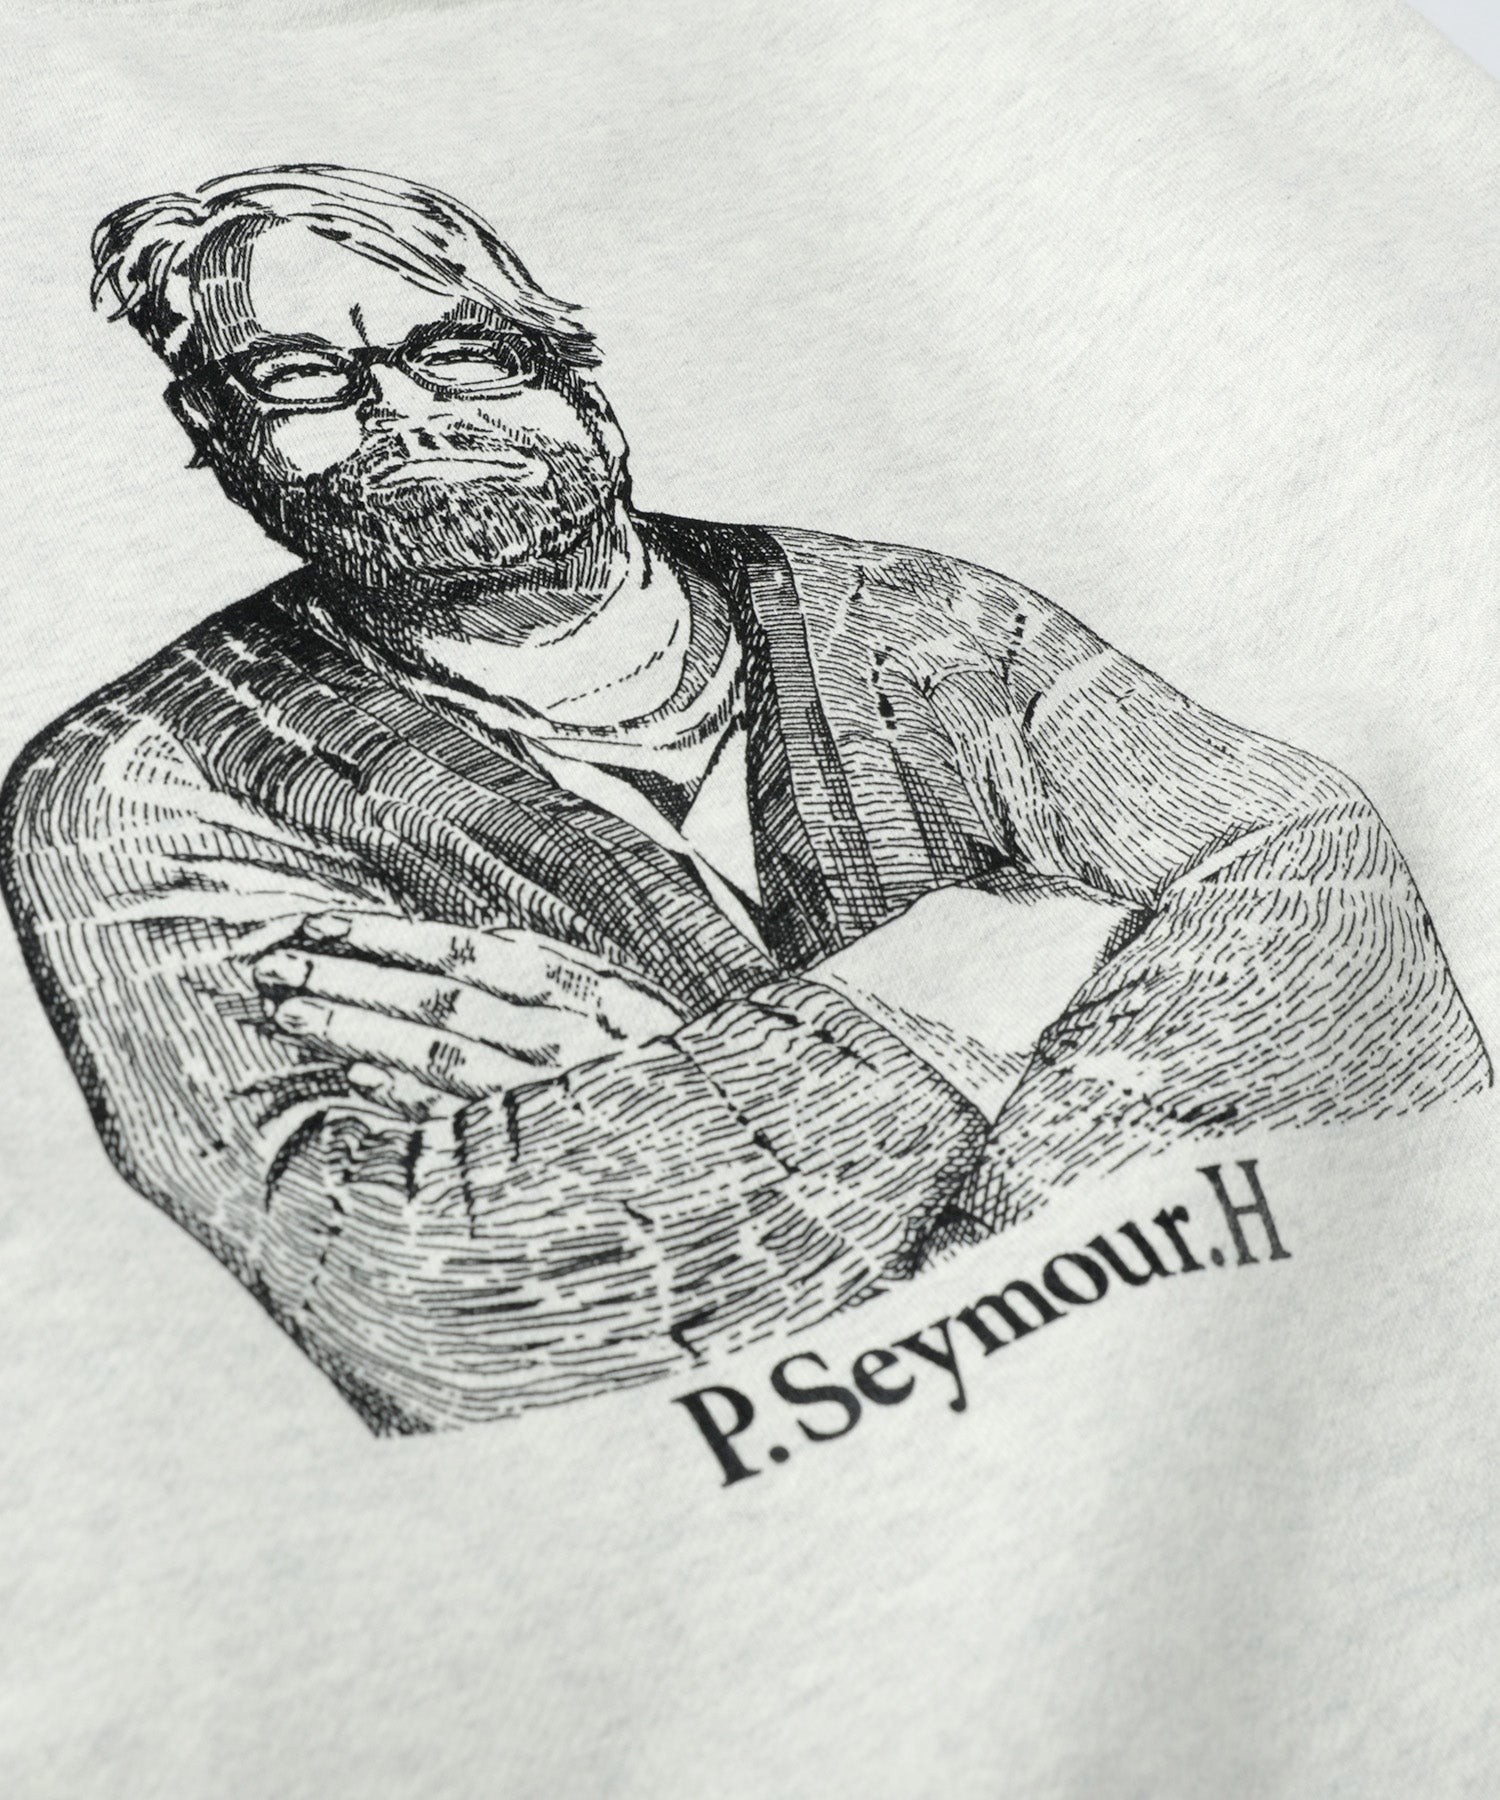 Seymour. "PHILIP” HEAVY SWEATSHIRT 2